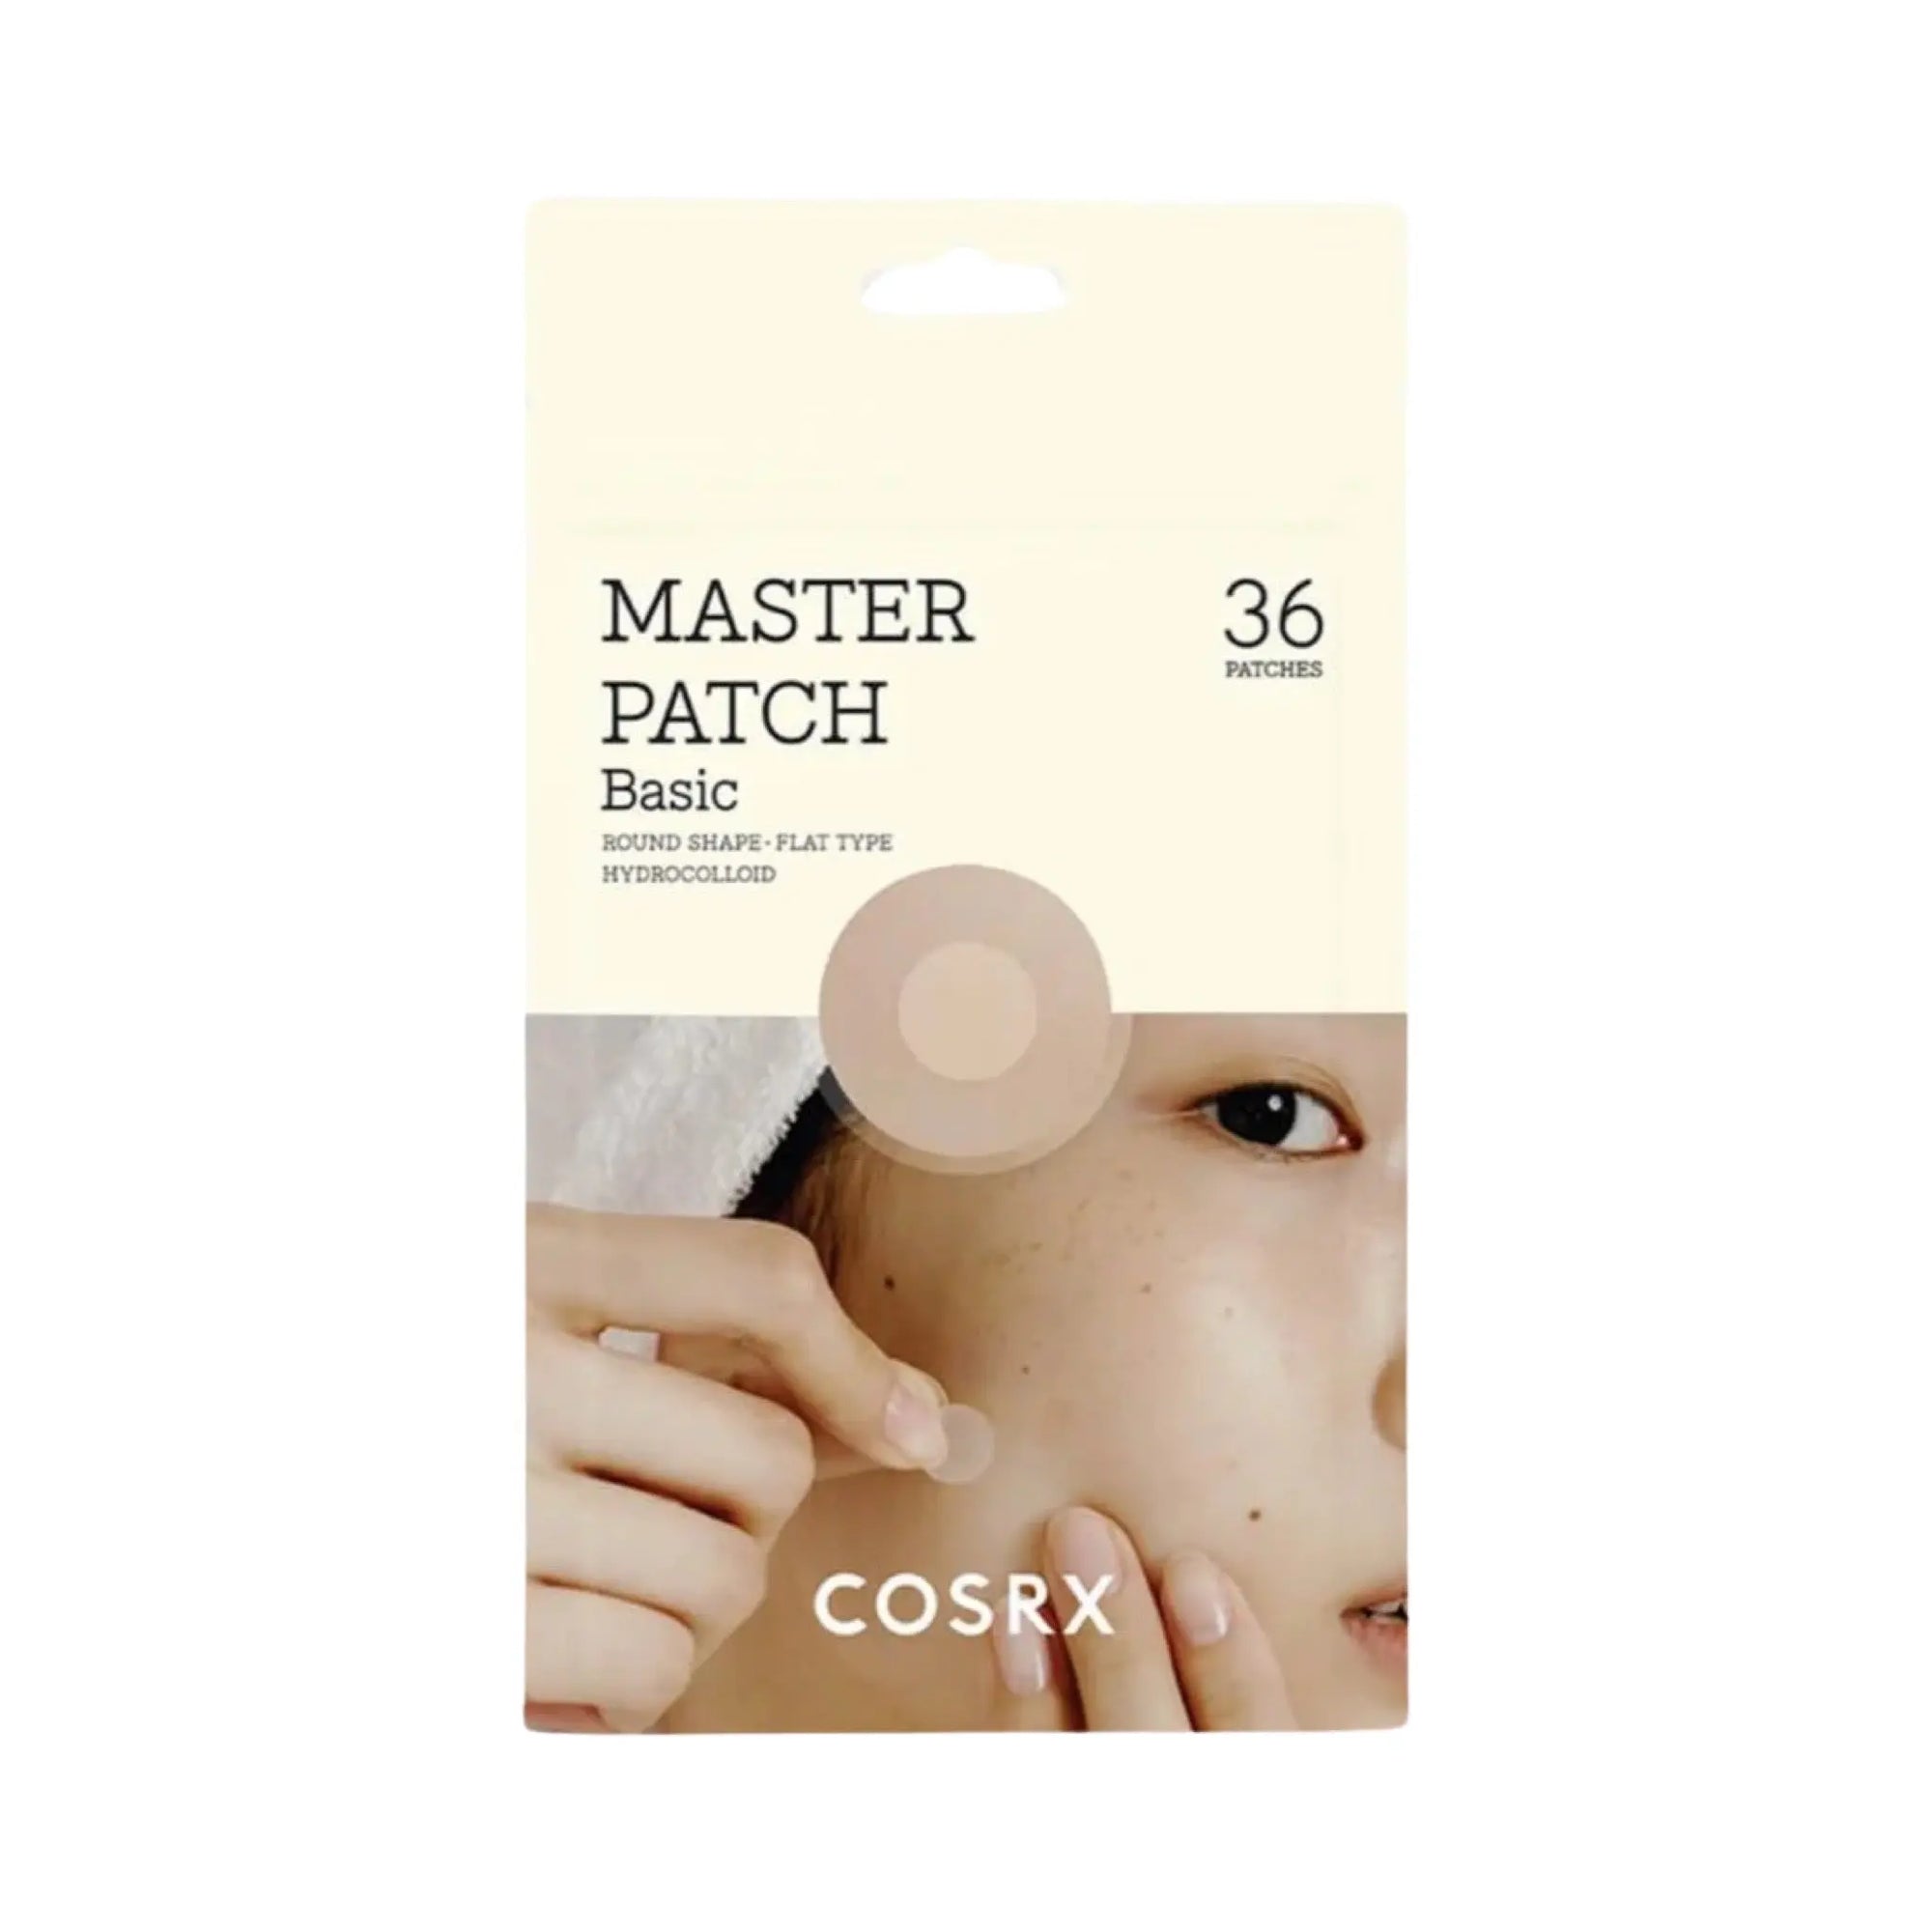 COSRX - Master Patch Basic COSRX